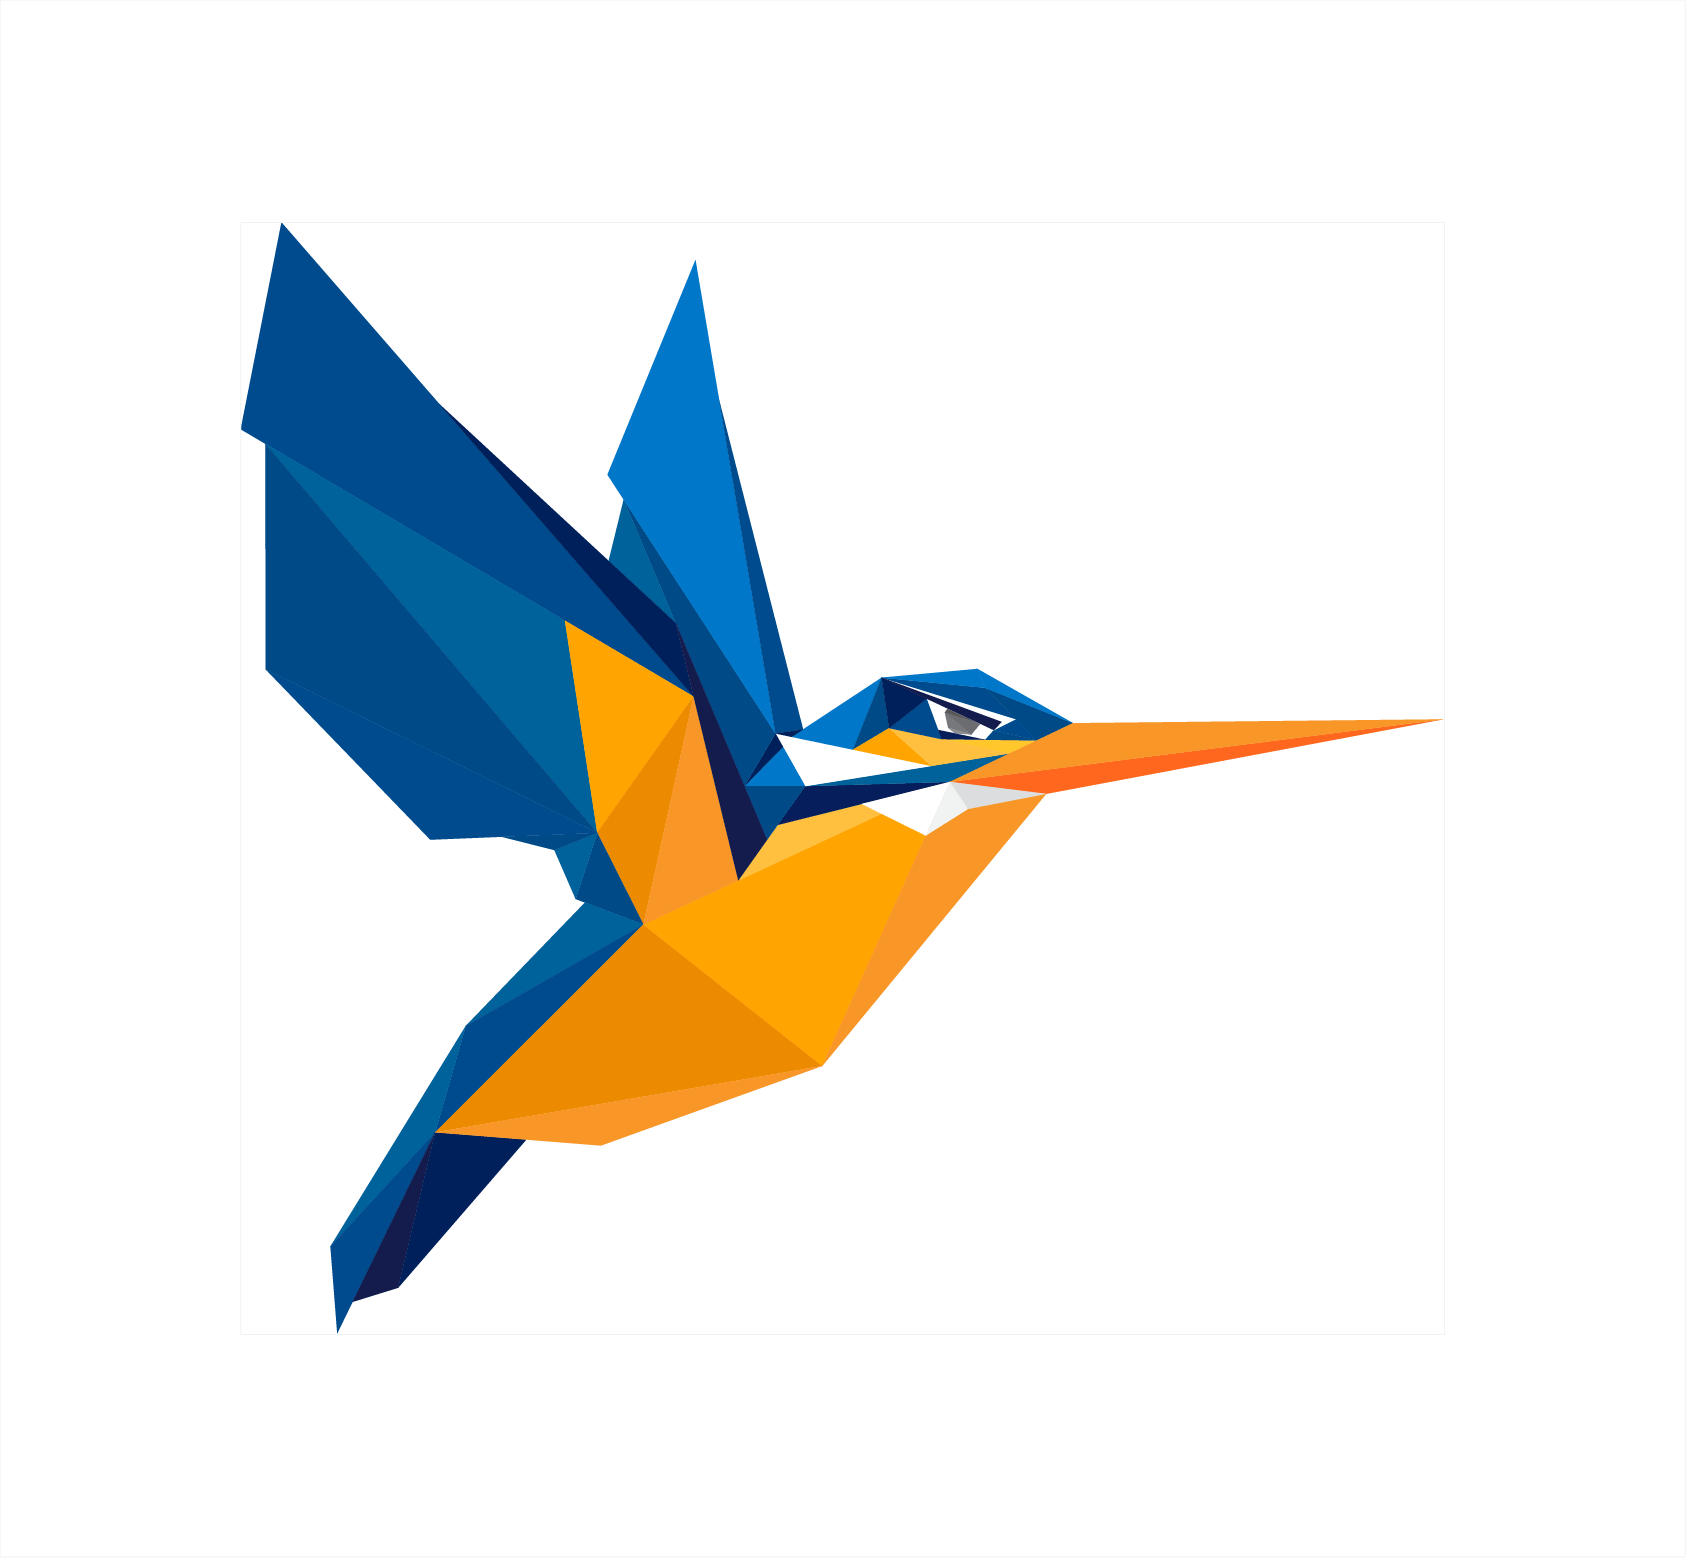 Kingfisher Bird PNG Imagenn de fondo